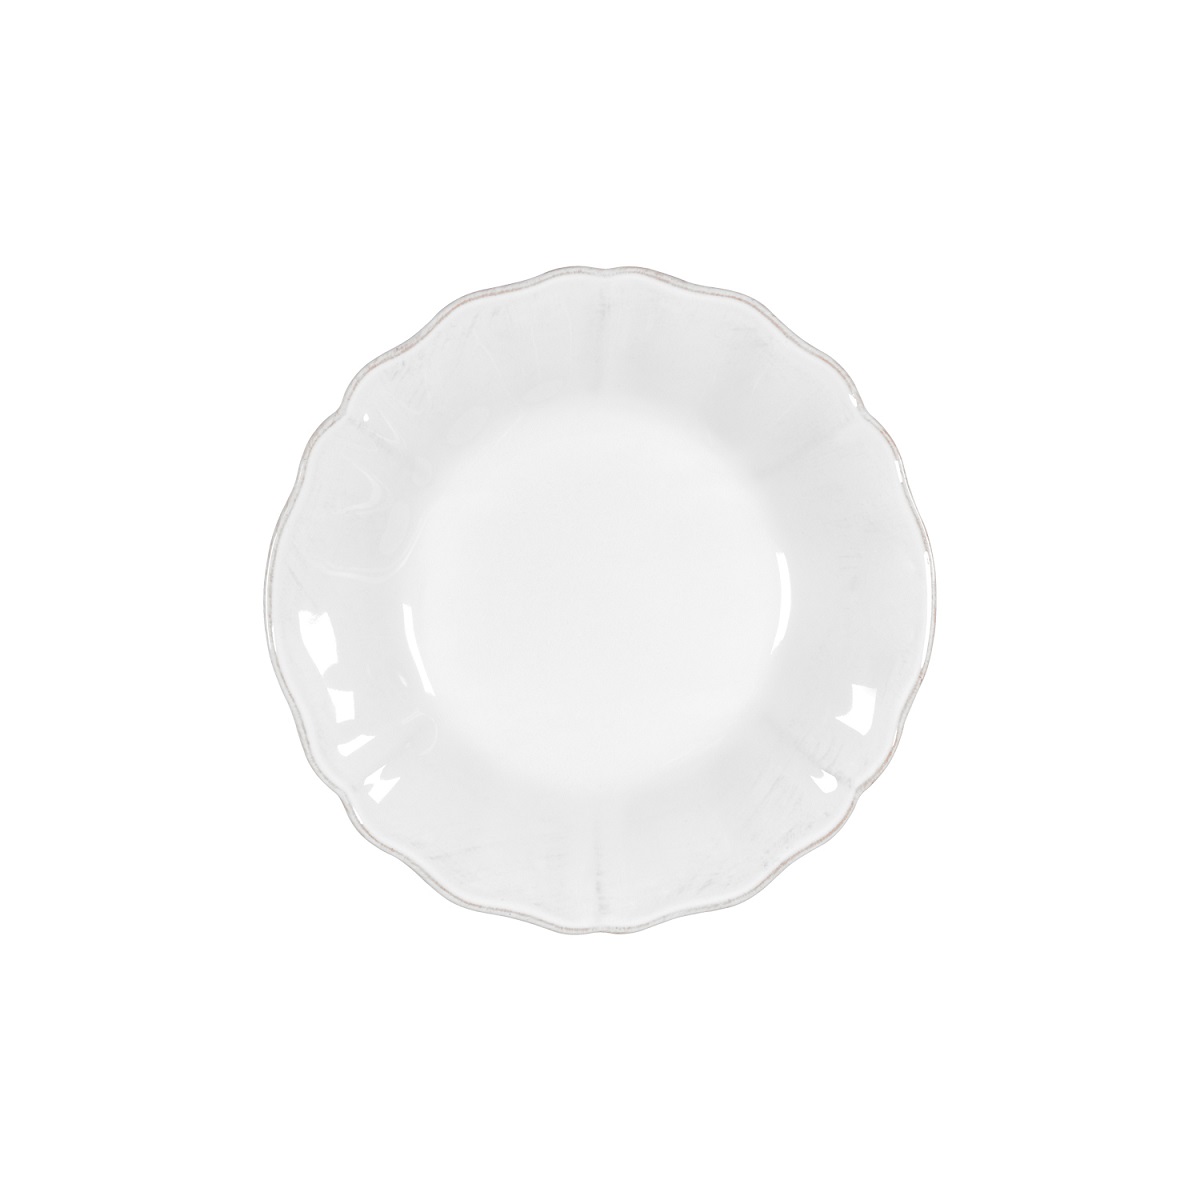 Alentejo White Soup/pasta Plate 24cm Gift